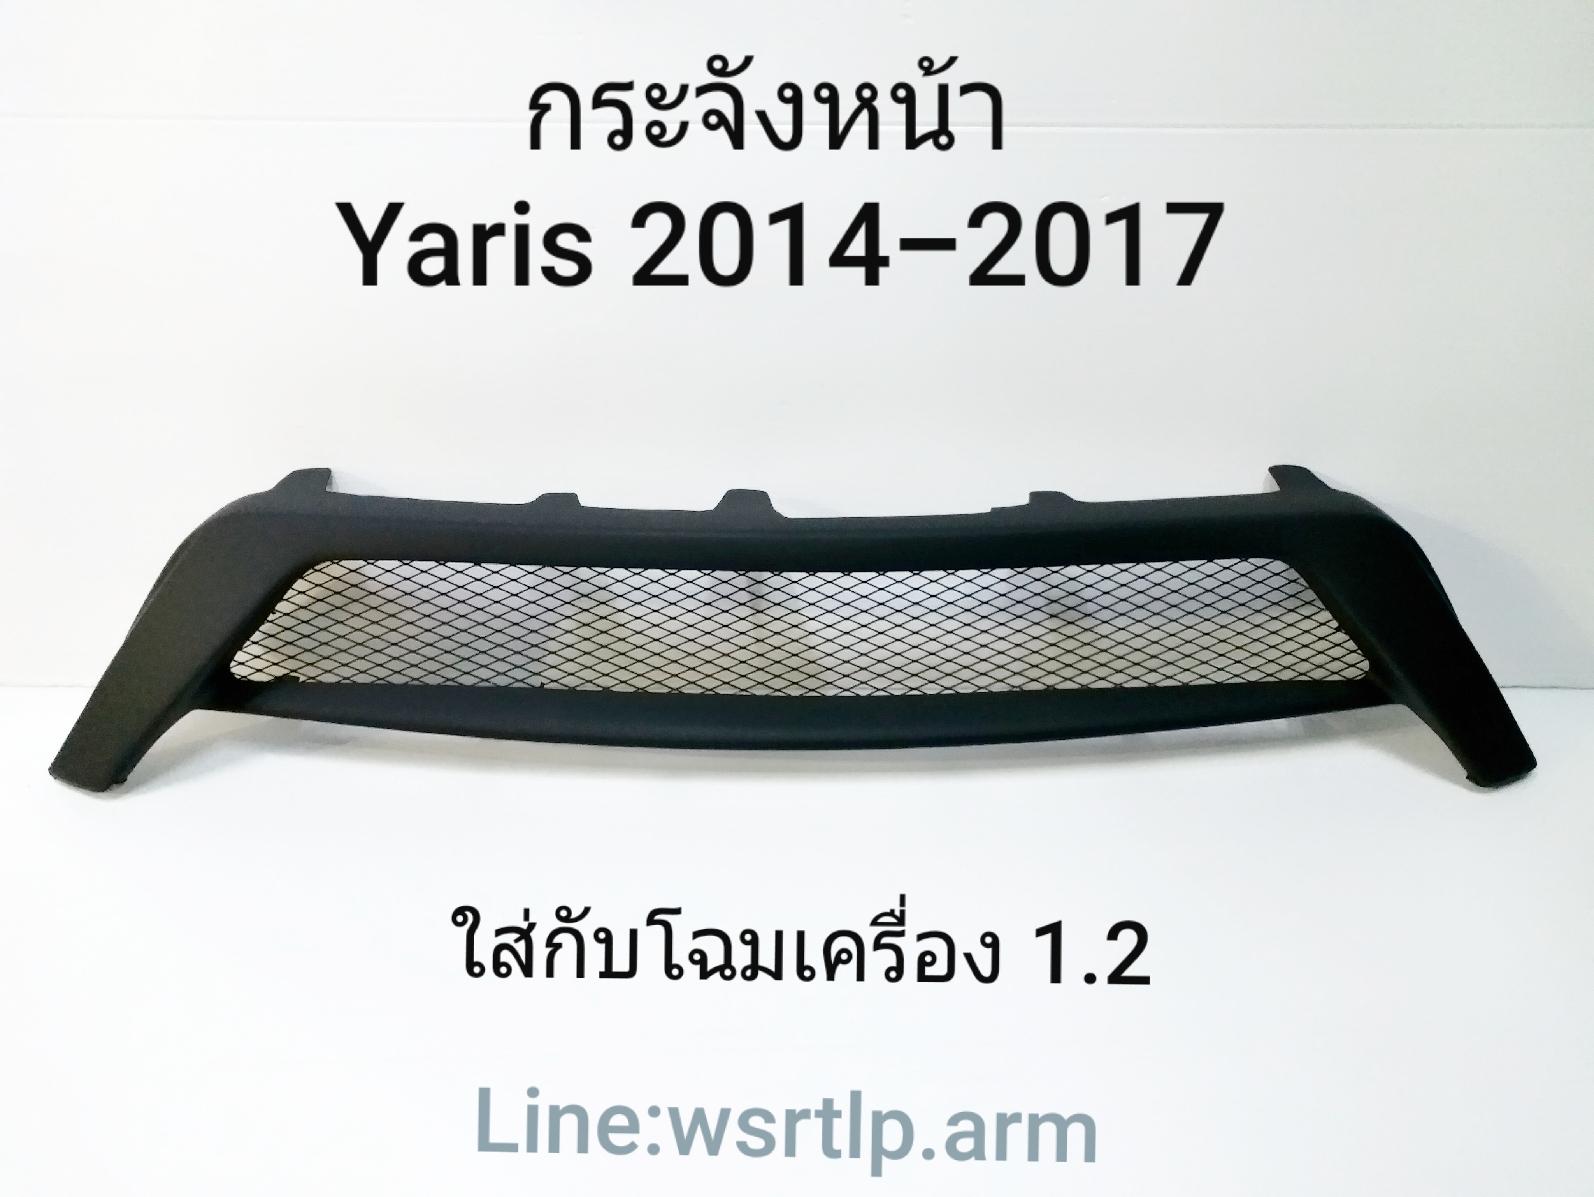 กระจังหน้า Yaris ยาริส 2014-2017 งานพลาสติคสีดำด้าน พร้อมตะแกรง ยาริสโฉมเครื่อง 1.2